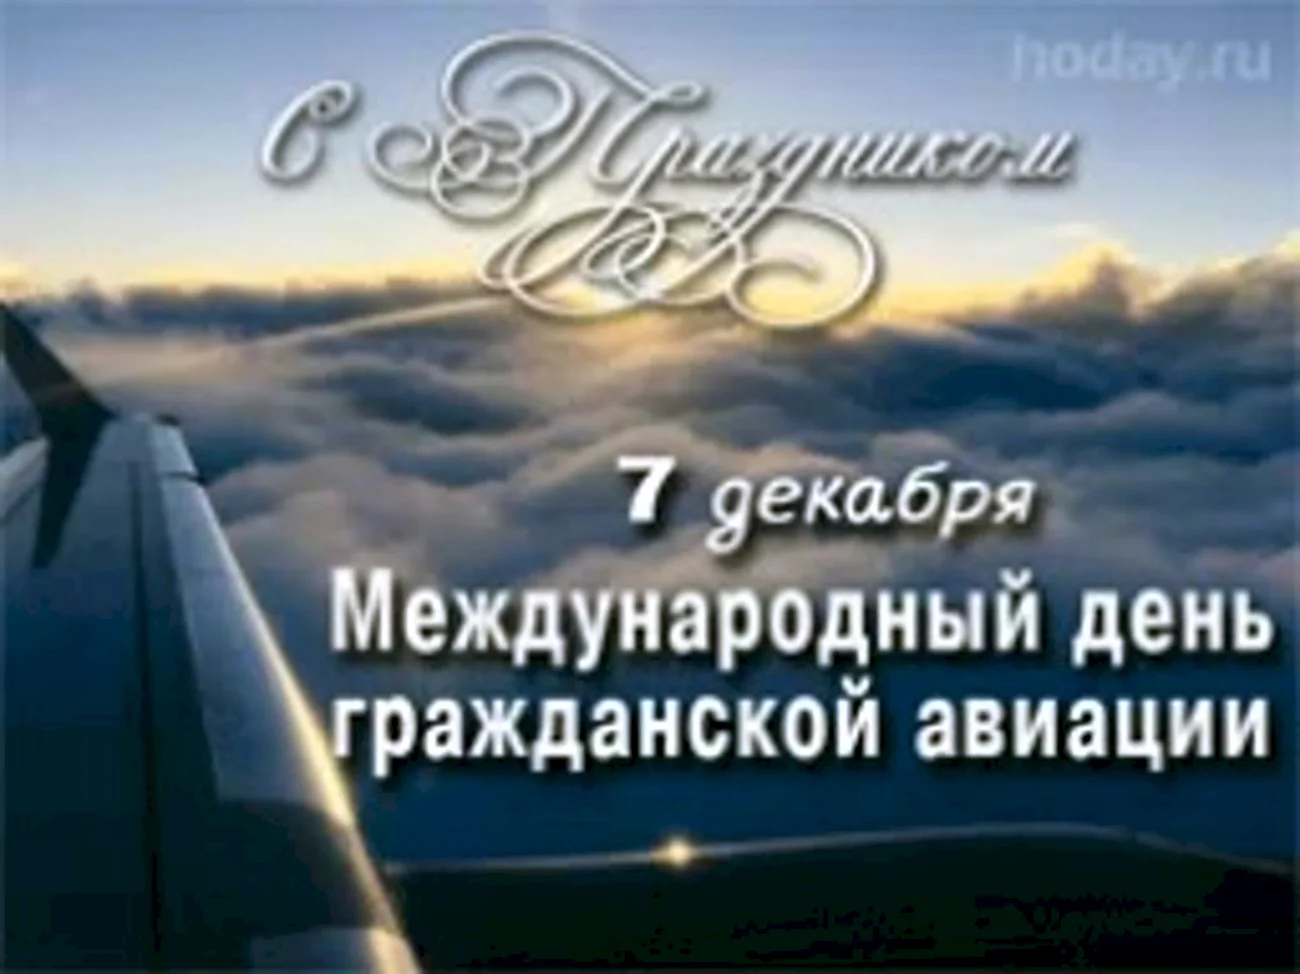 Международный день гражданской авиации 7 декабря. Поздравление